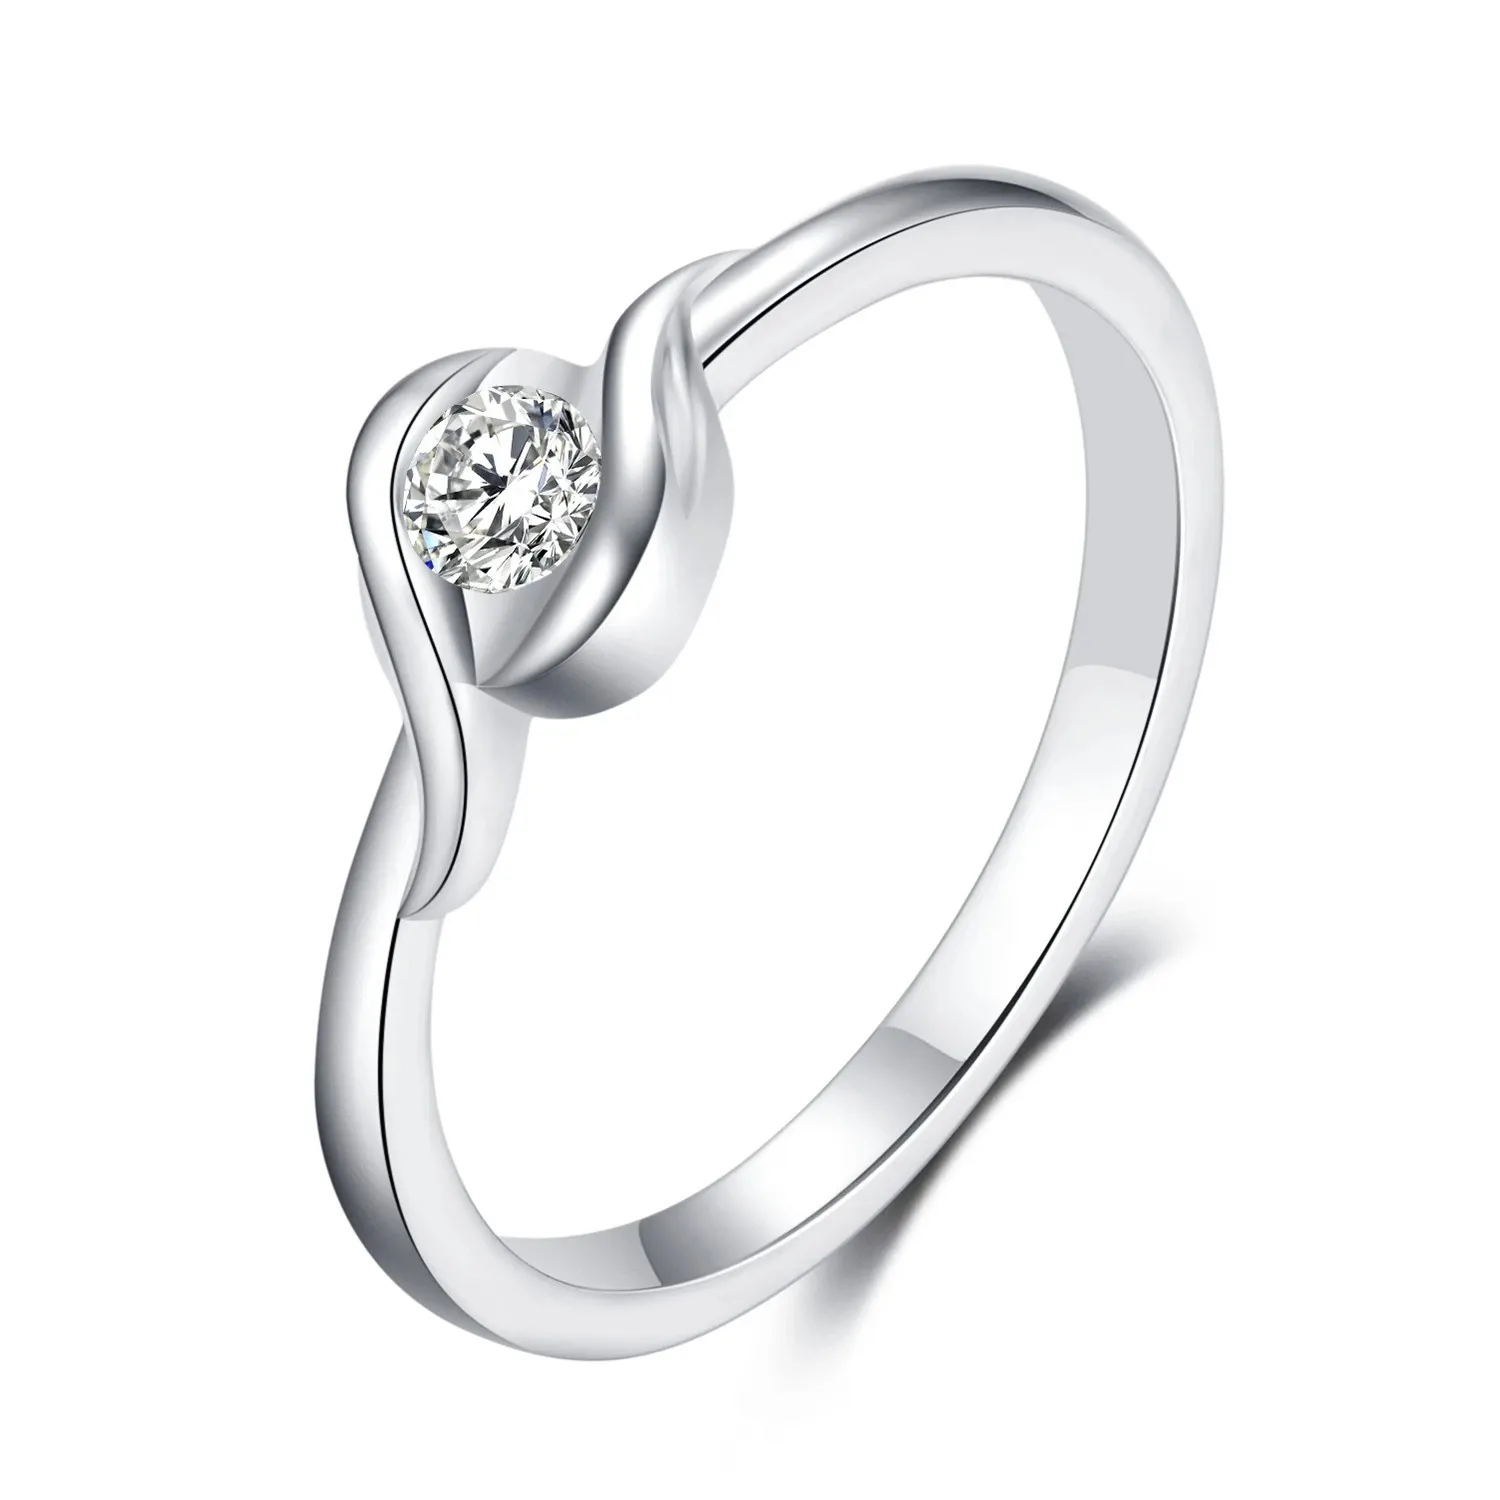 2021 nouveau S925 argent Moissan bague en diamant rond sens de la mode lumière proposition de luxe bijoux en diamant pour cadeau souvenir petite amie